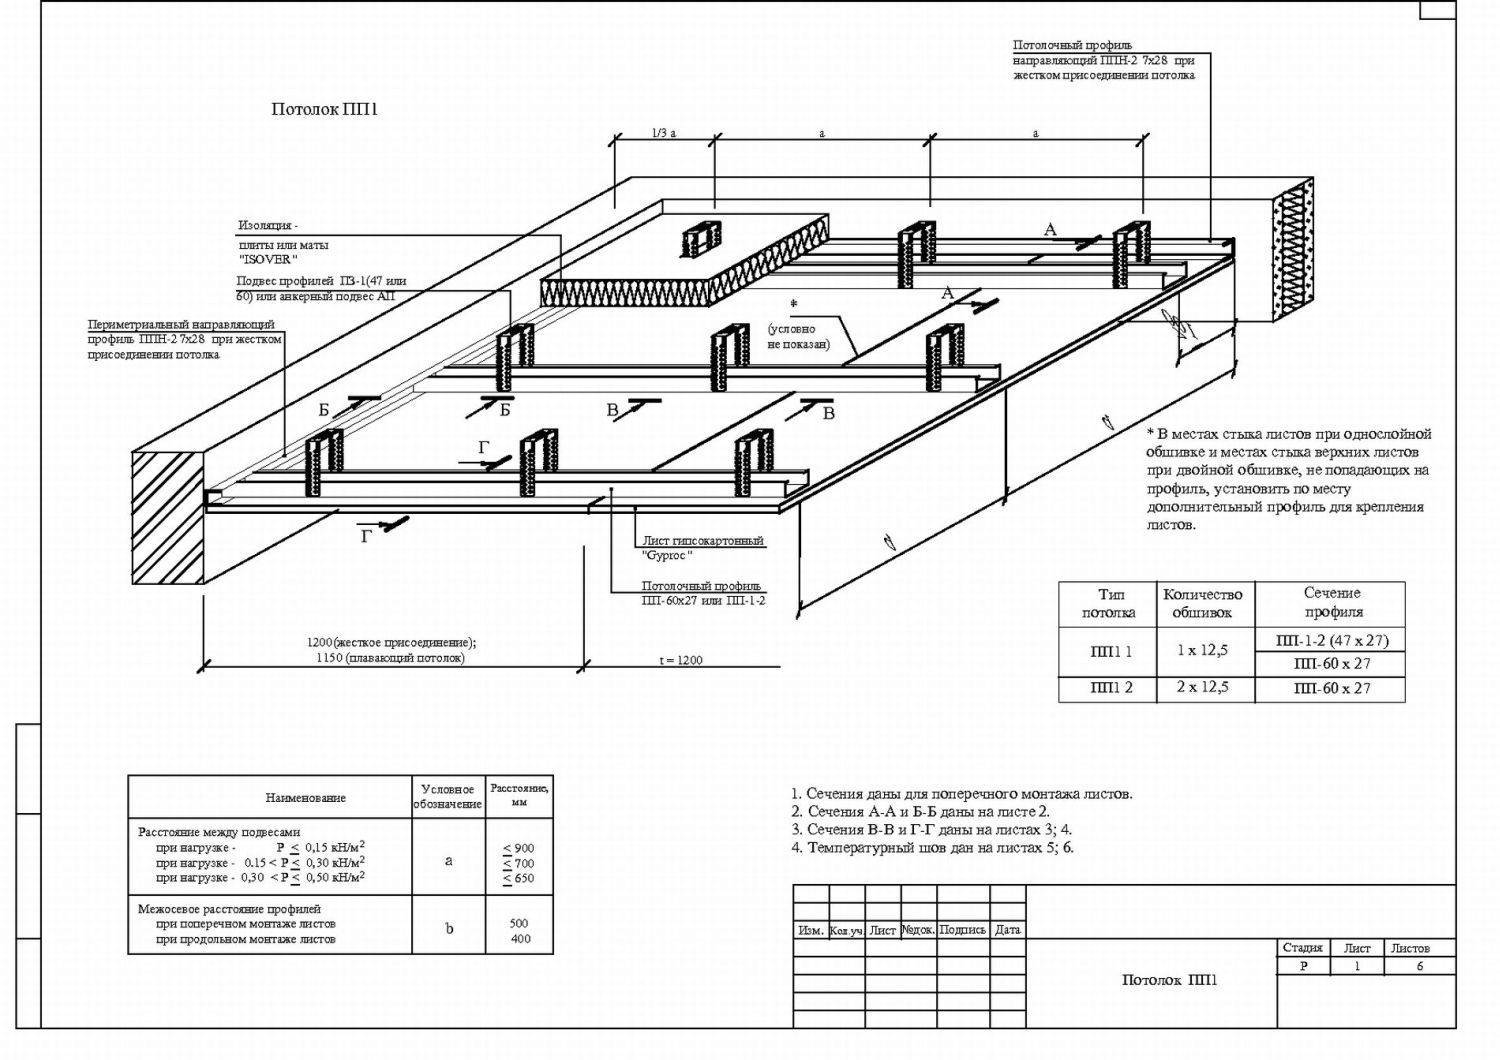 Двухуровневые потолки из гипсокартона своими руками – инструкция по устройству и монтажу | онлайн-журнал о ремонте и дизайне